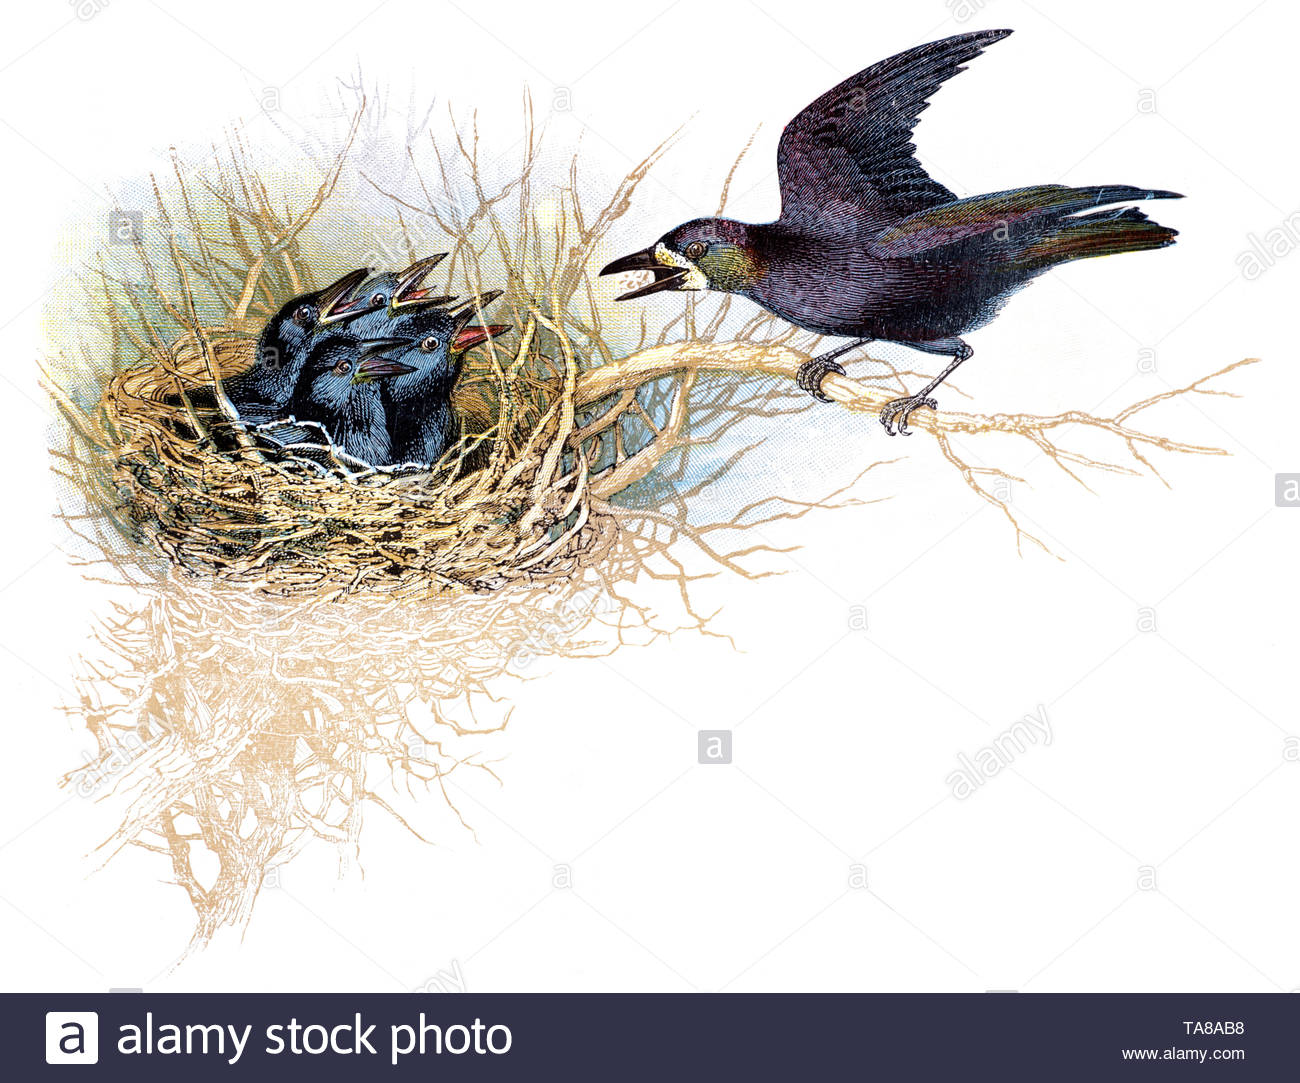 Saatkrähe (Corvus frugilegus) am Nest mit Küken, vintage Abbildung im Jahr 1898 veröffentlicht. Stockfoto